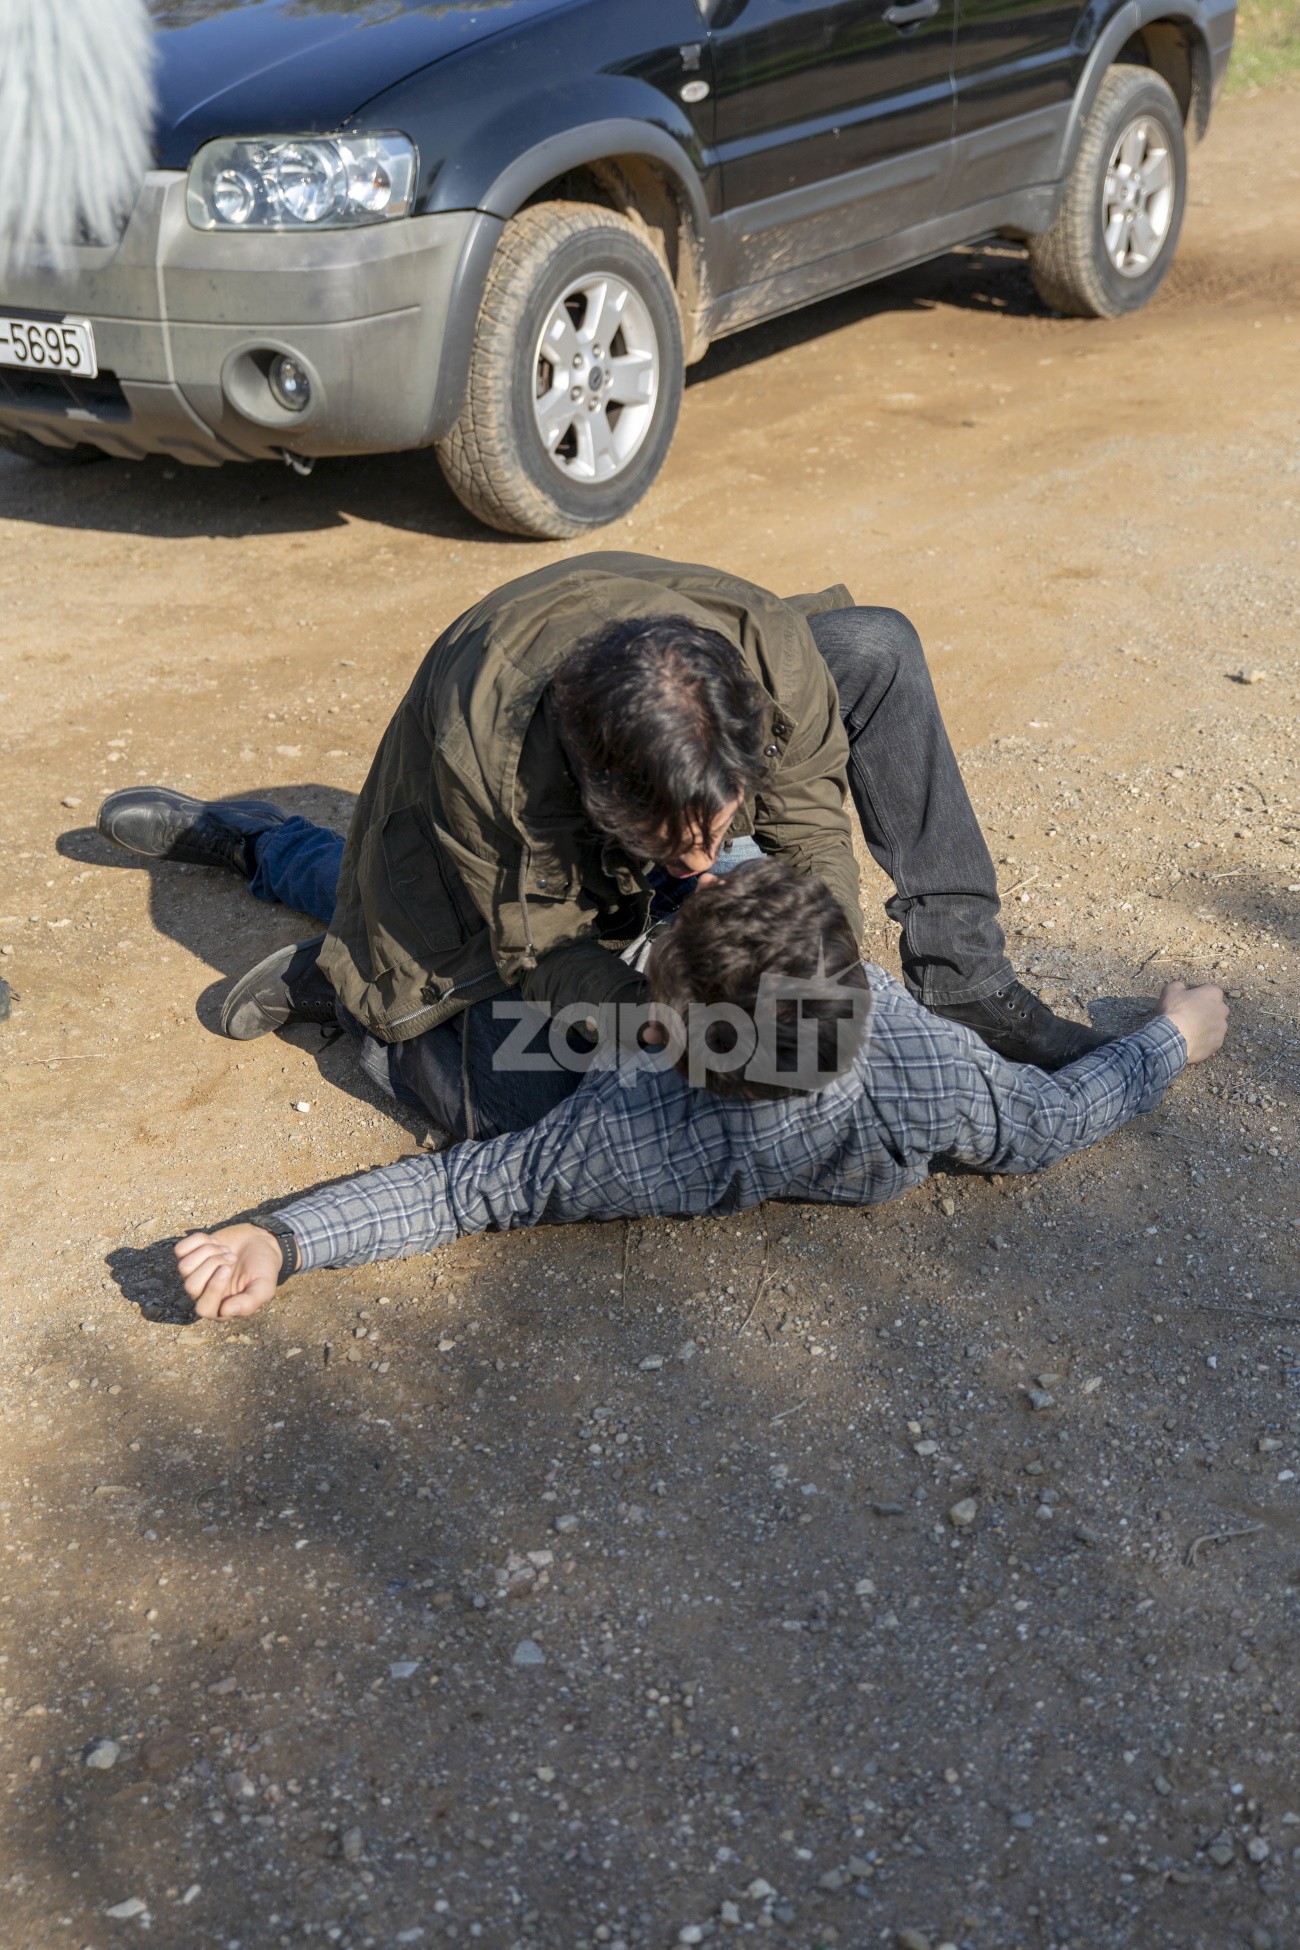 Σασμός: «Κόβουν την ανάσα» οι φωτογραφίες της δολοφονίας του Πετρή από τον Αστέρη (ΕΙΚΟΝΕΣ)